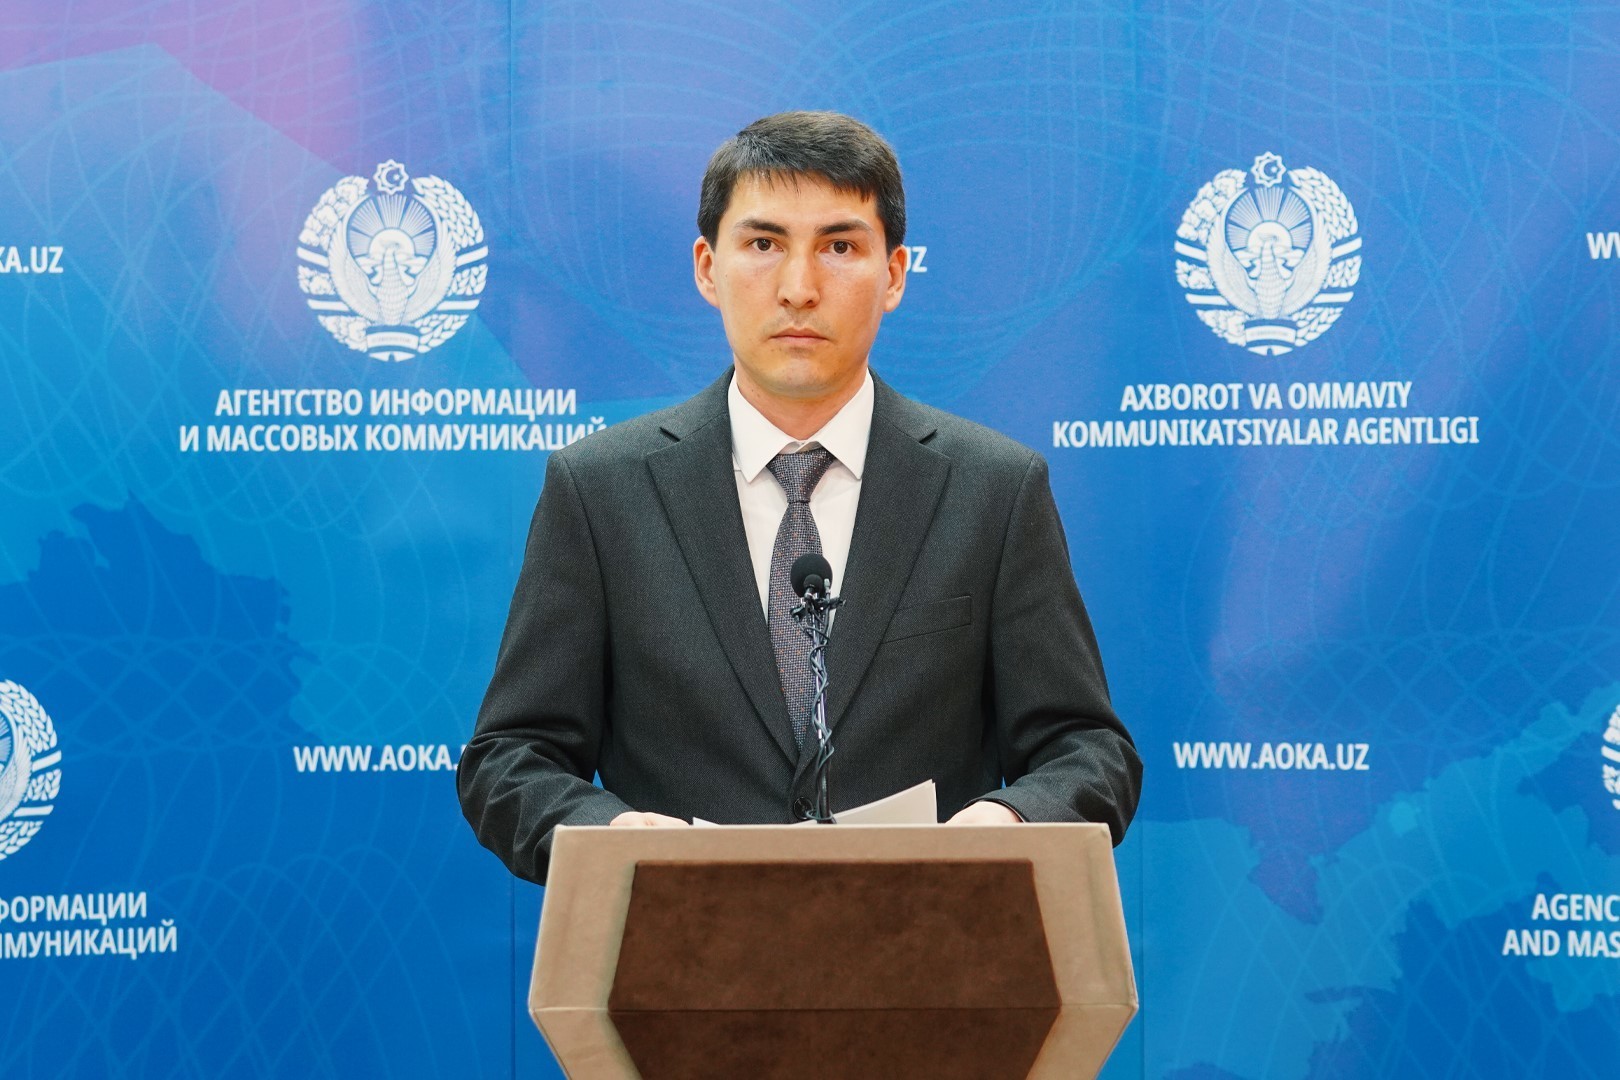 Akmal Nazarov